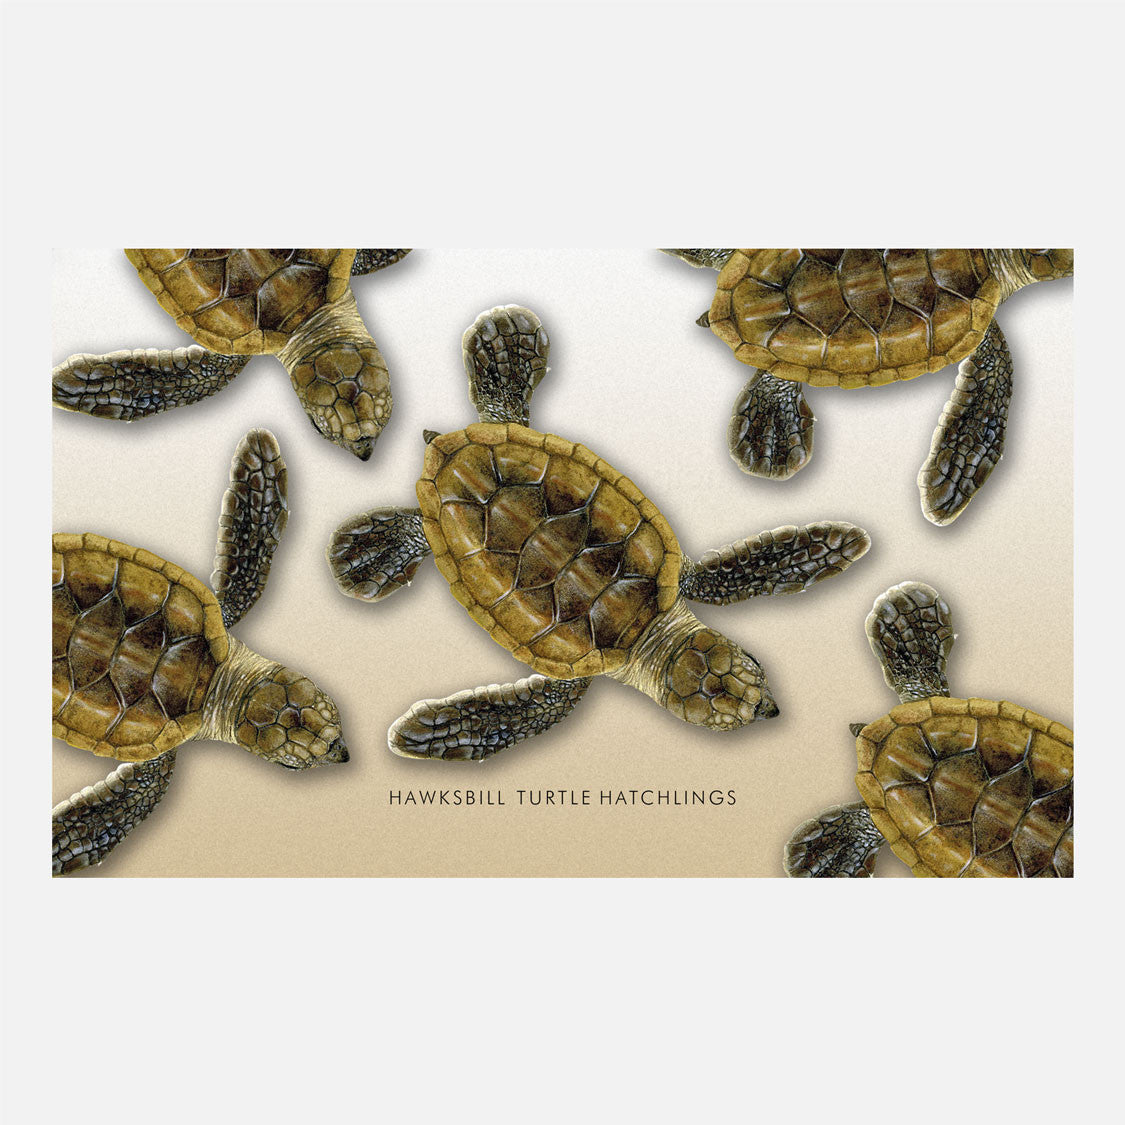 Hawksbill sea turtle hatchlings